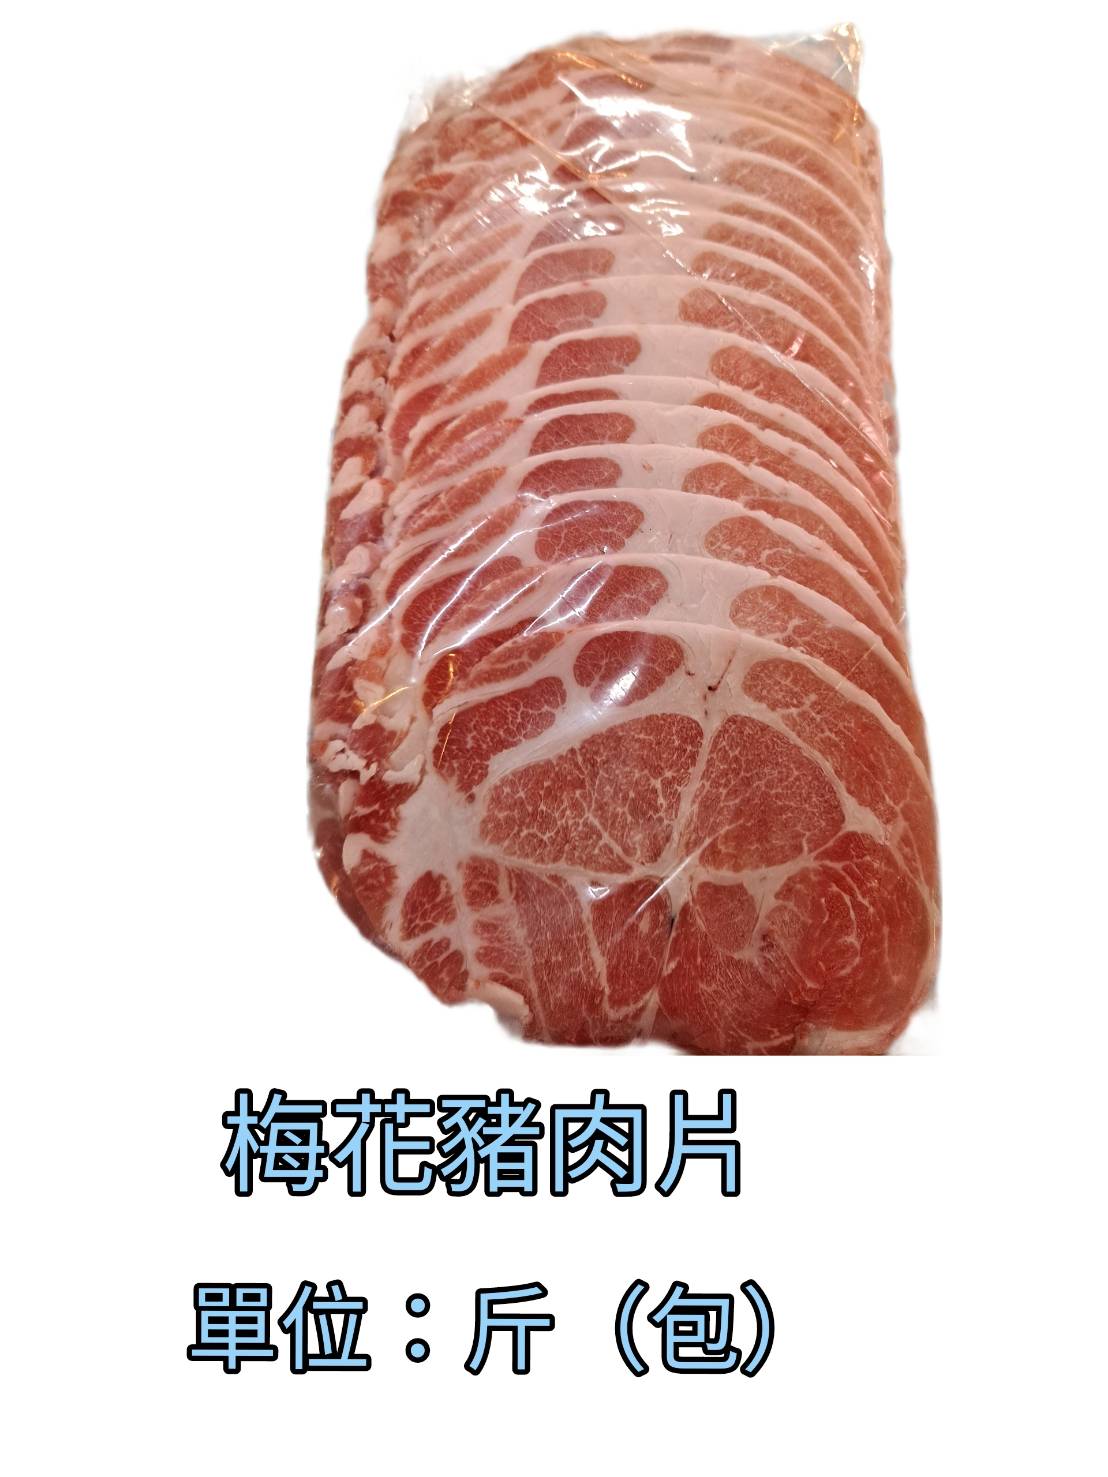 恆發肉店-梅花豬肉片